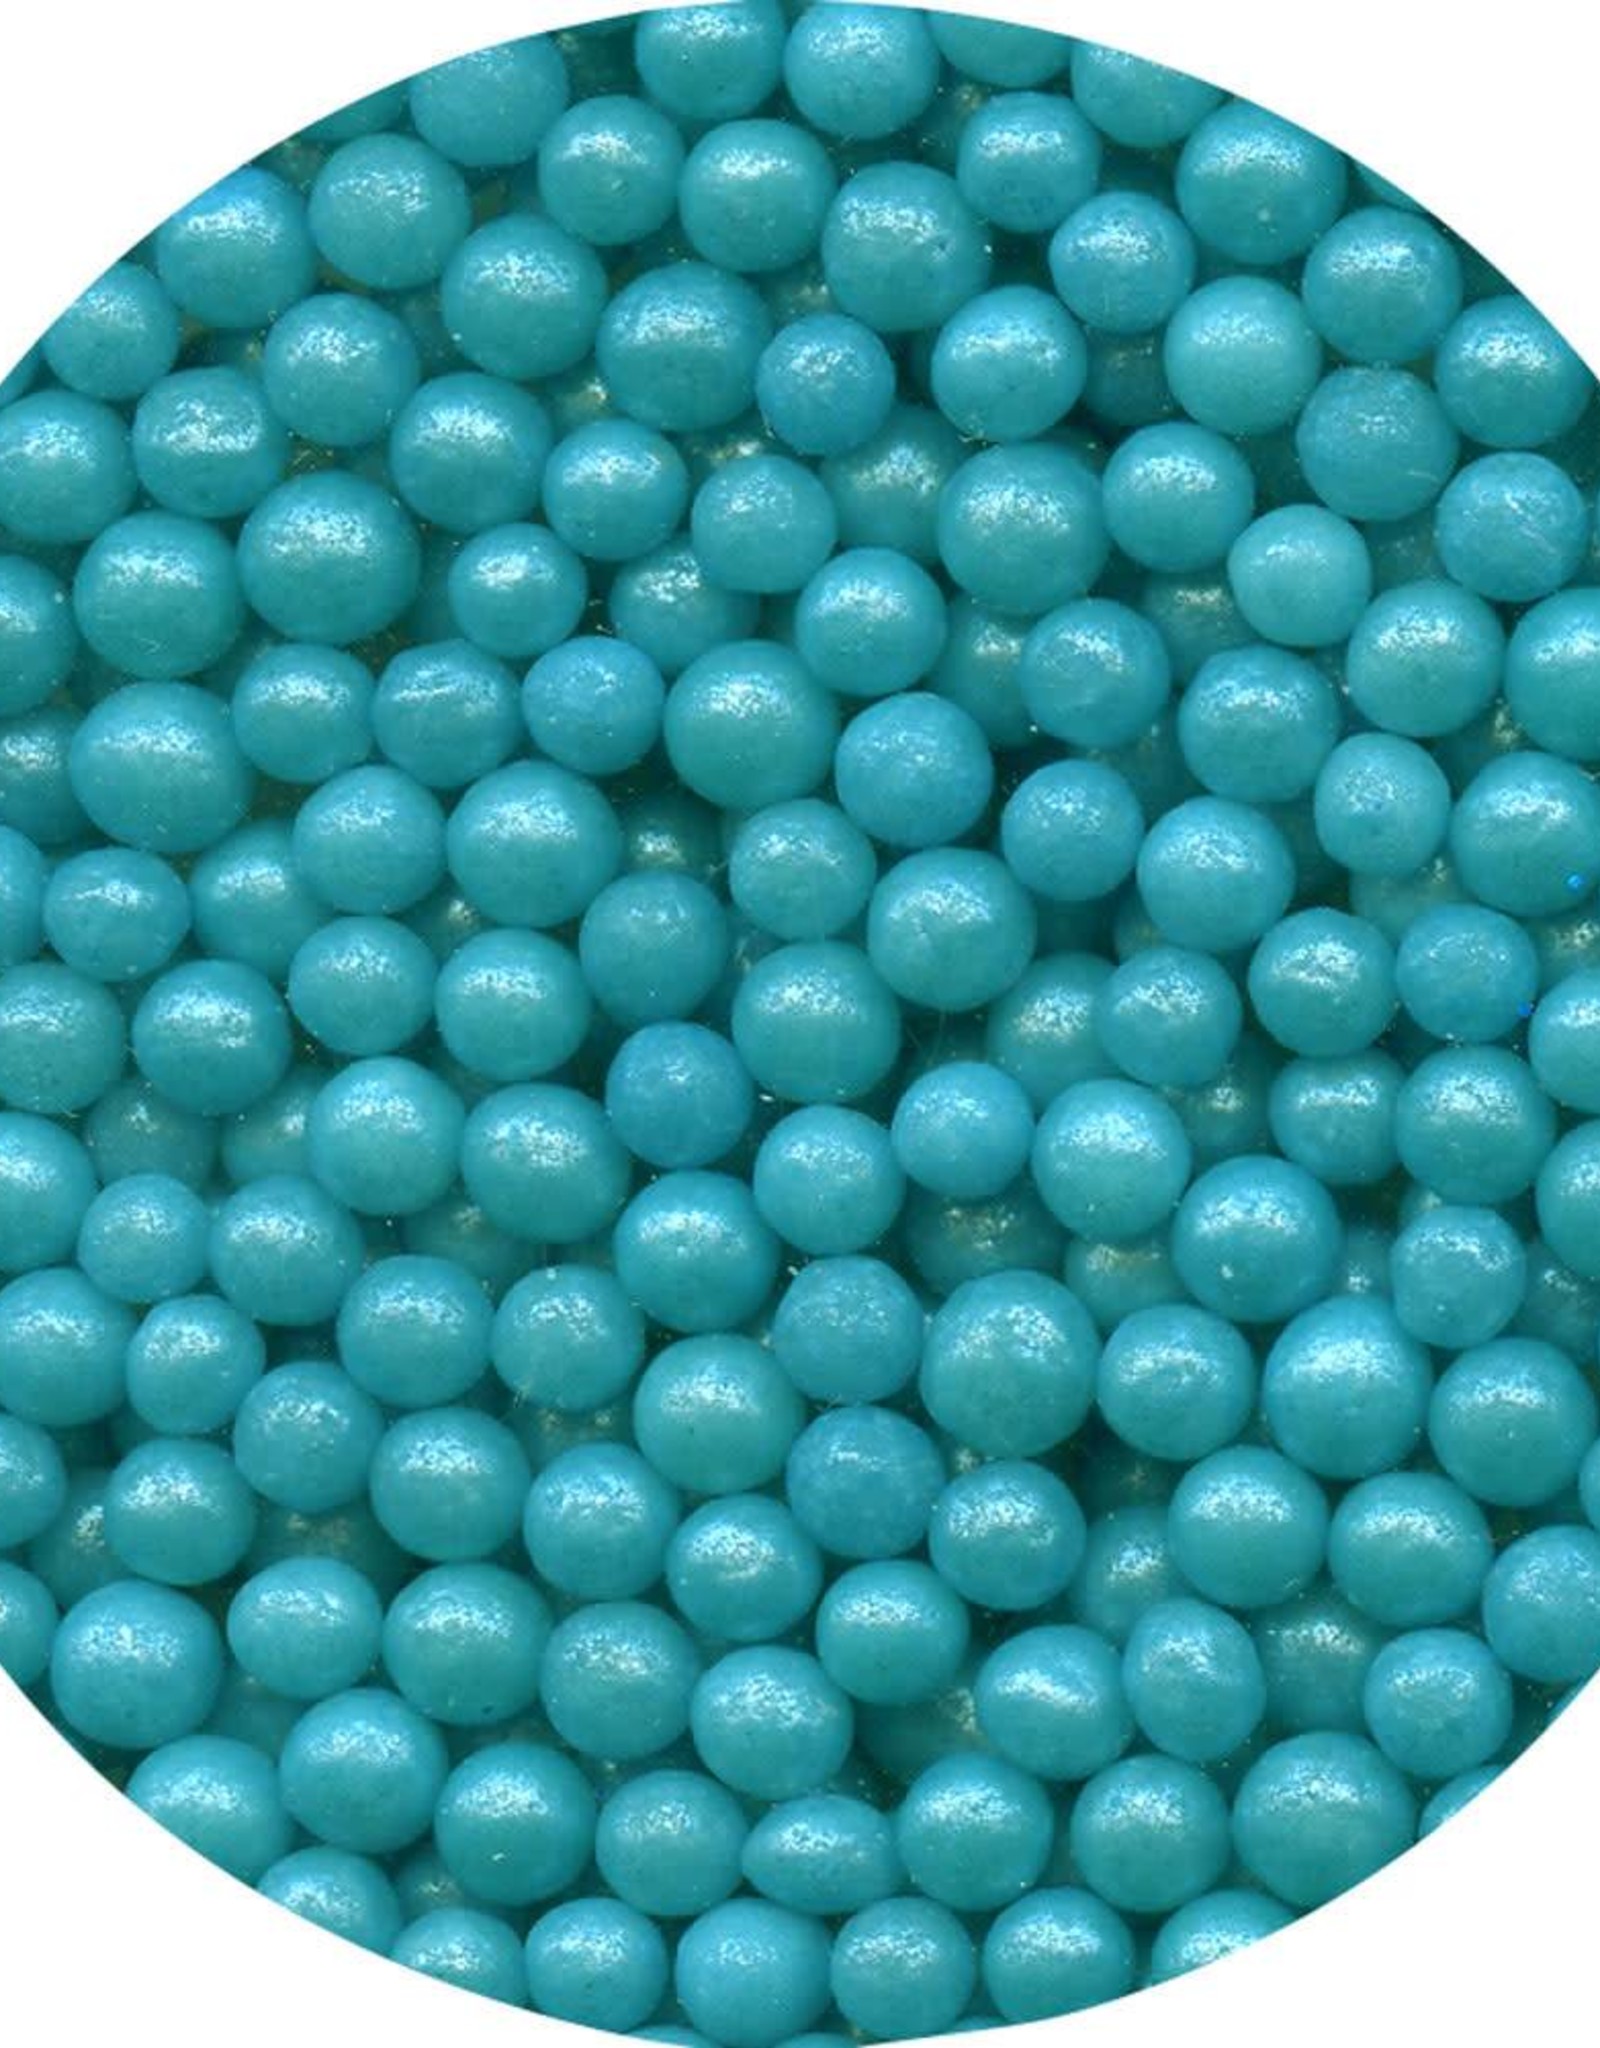 Blue Pearlized Sugar Pearls